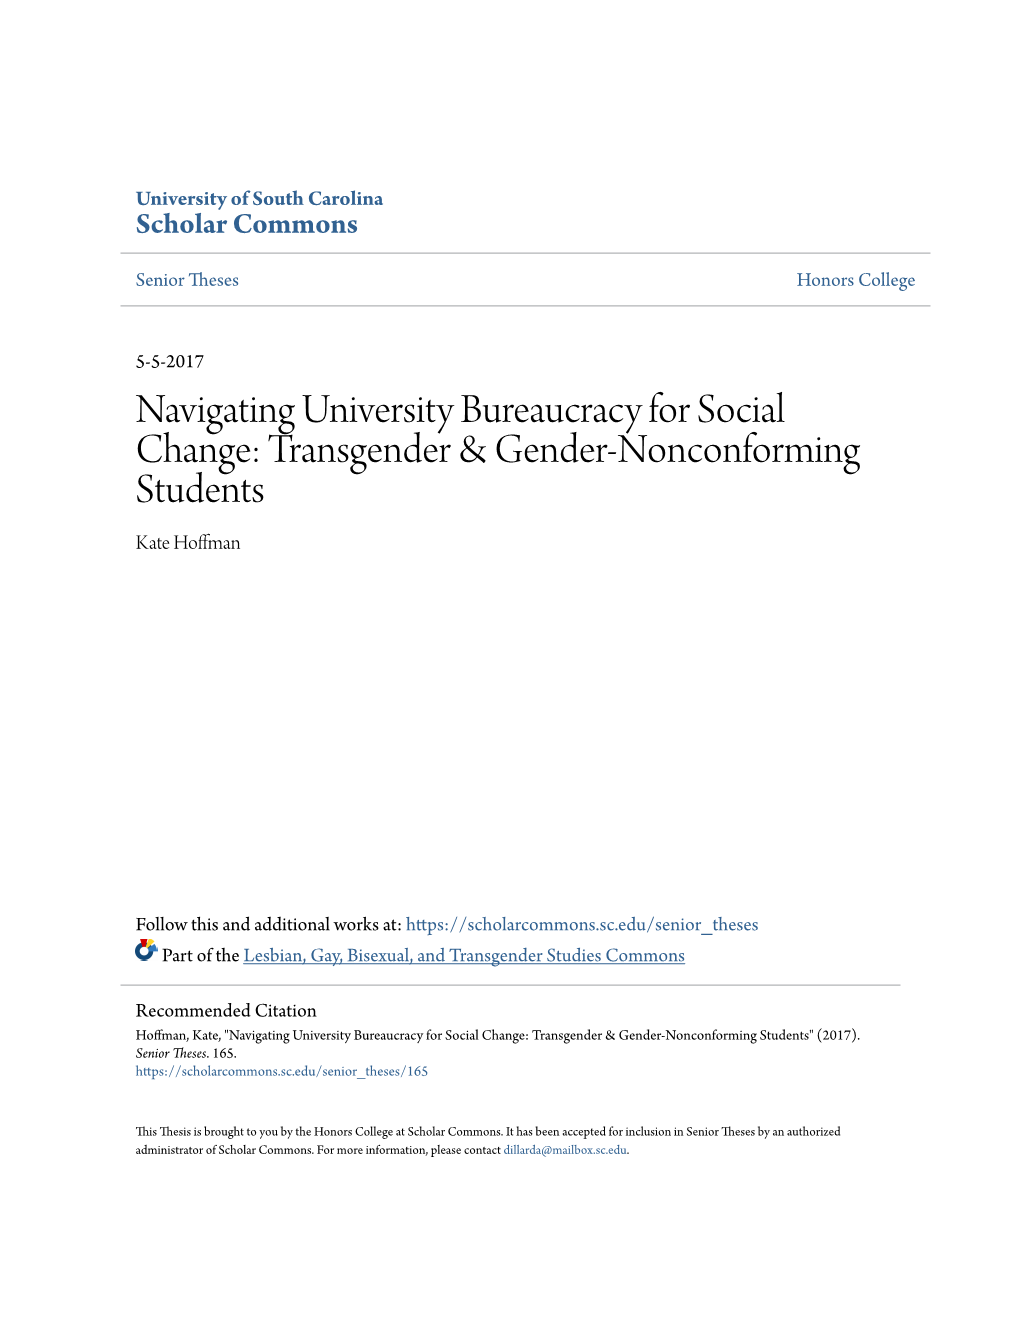 Navigating University Bureaucracy for Social Change: Transgender & Gender-Nonconforming Students Kate Hoffman